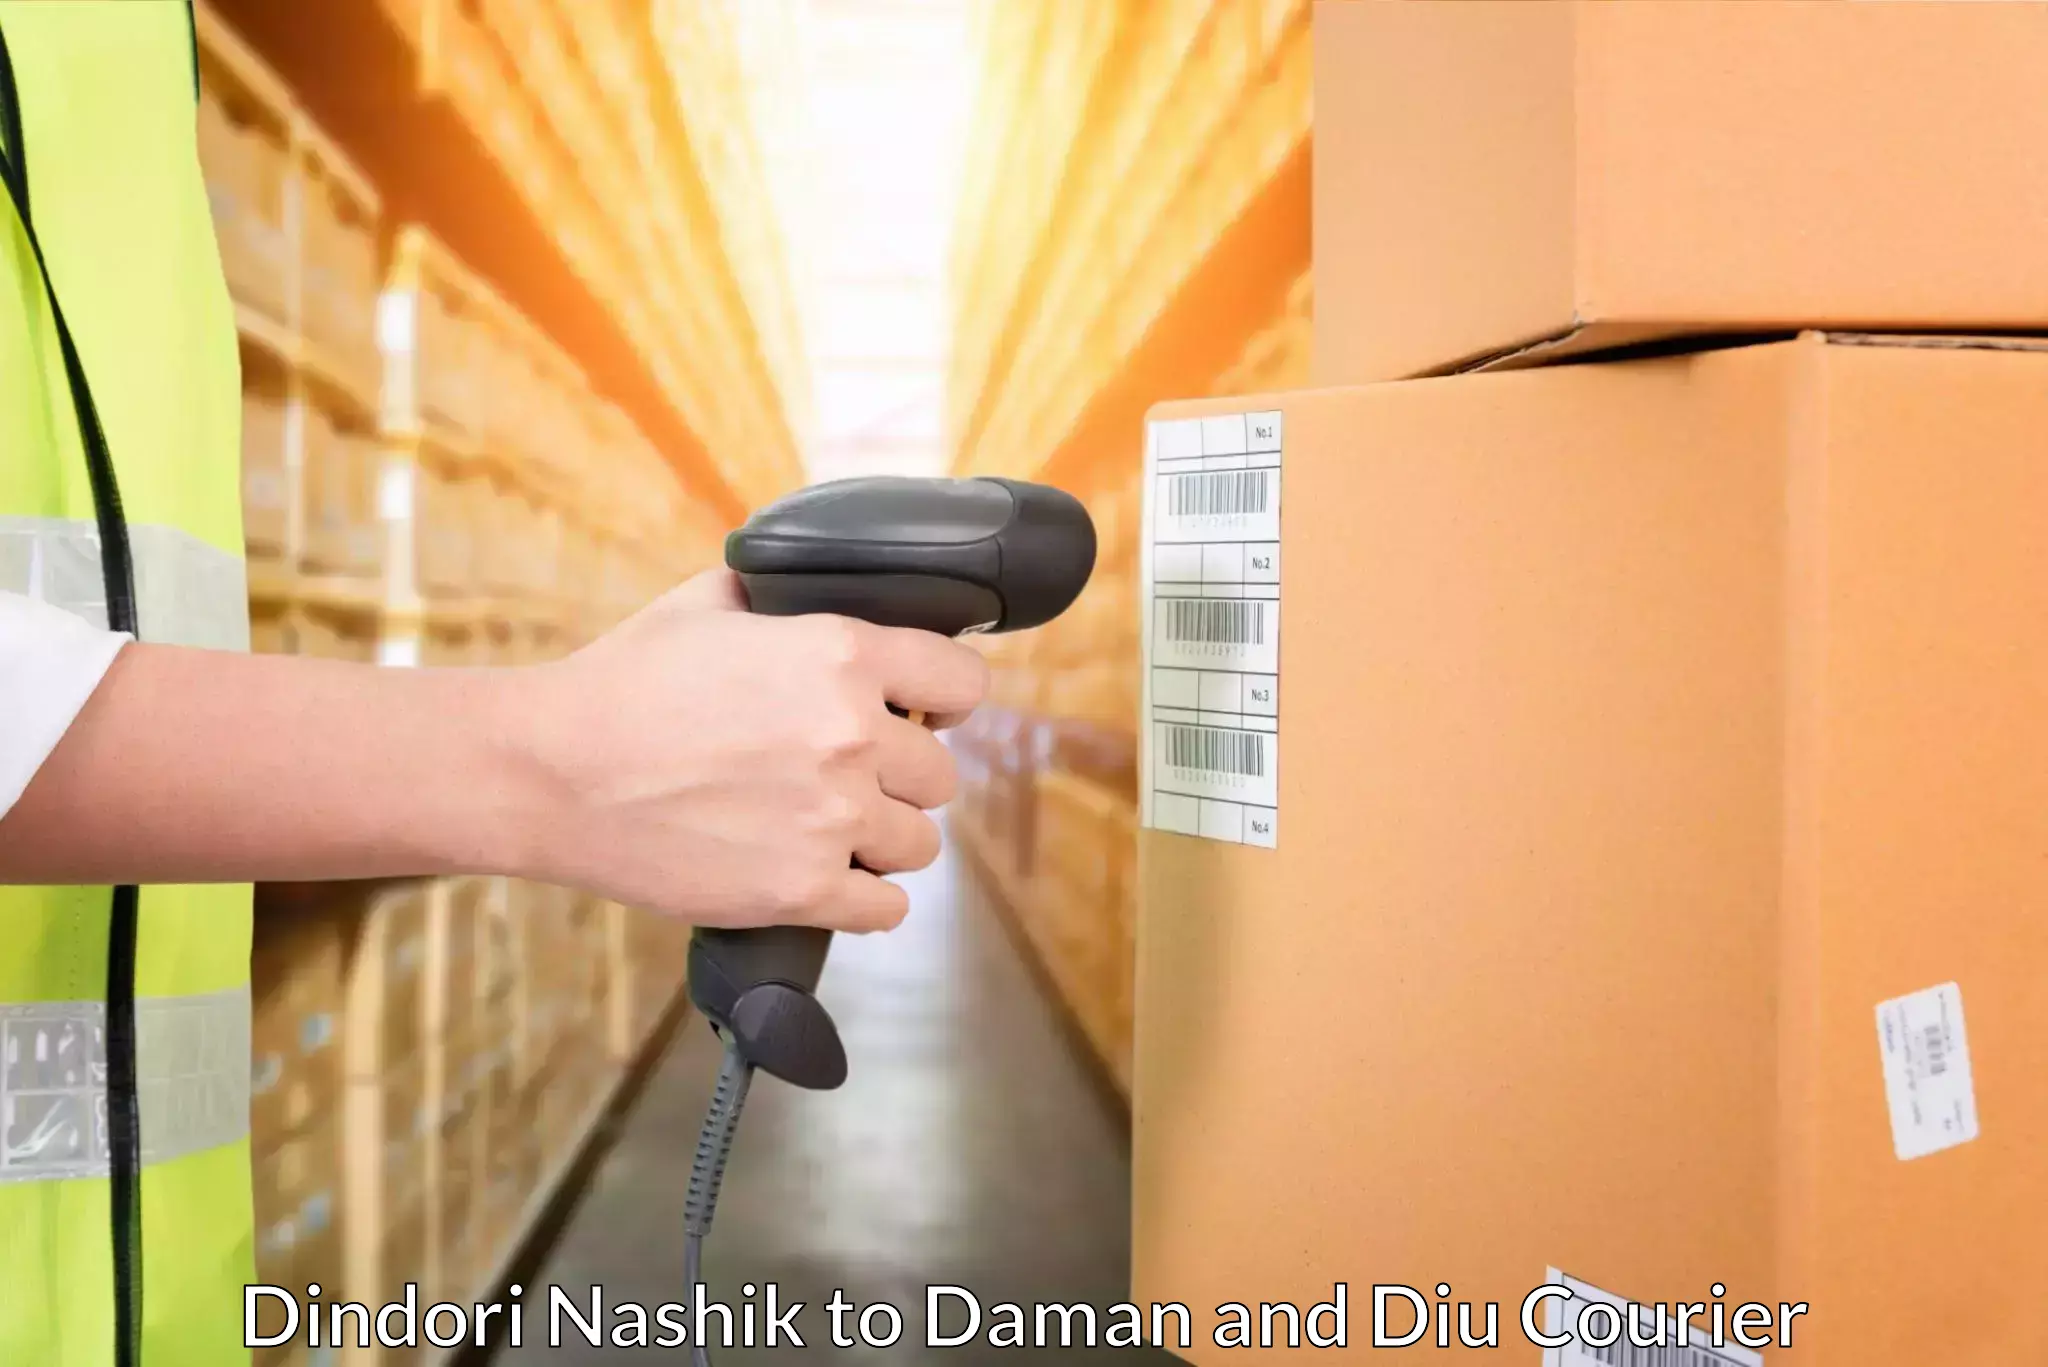 Premium courier solutions Dindori Nashik to Daman and Diu